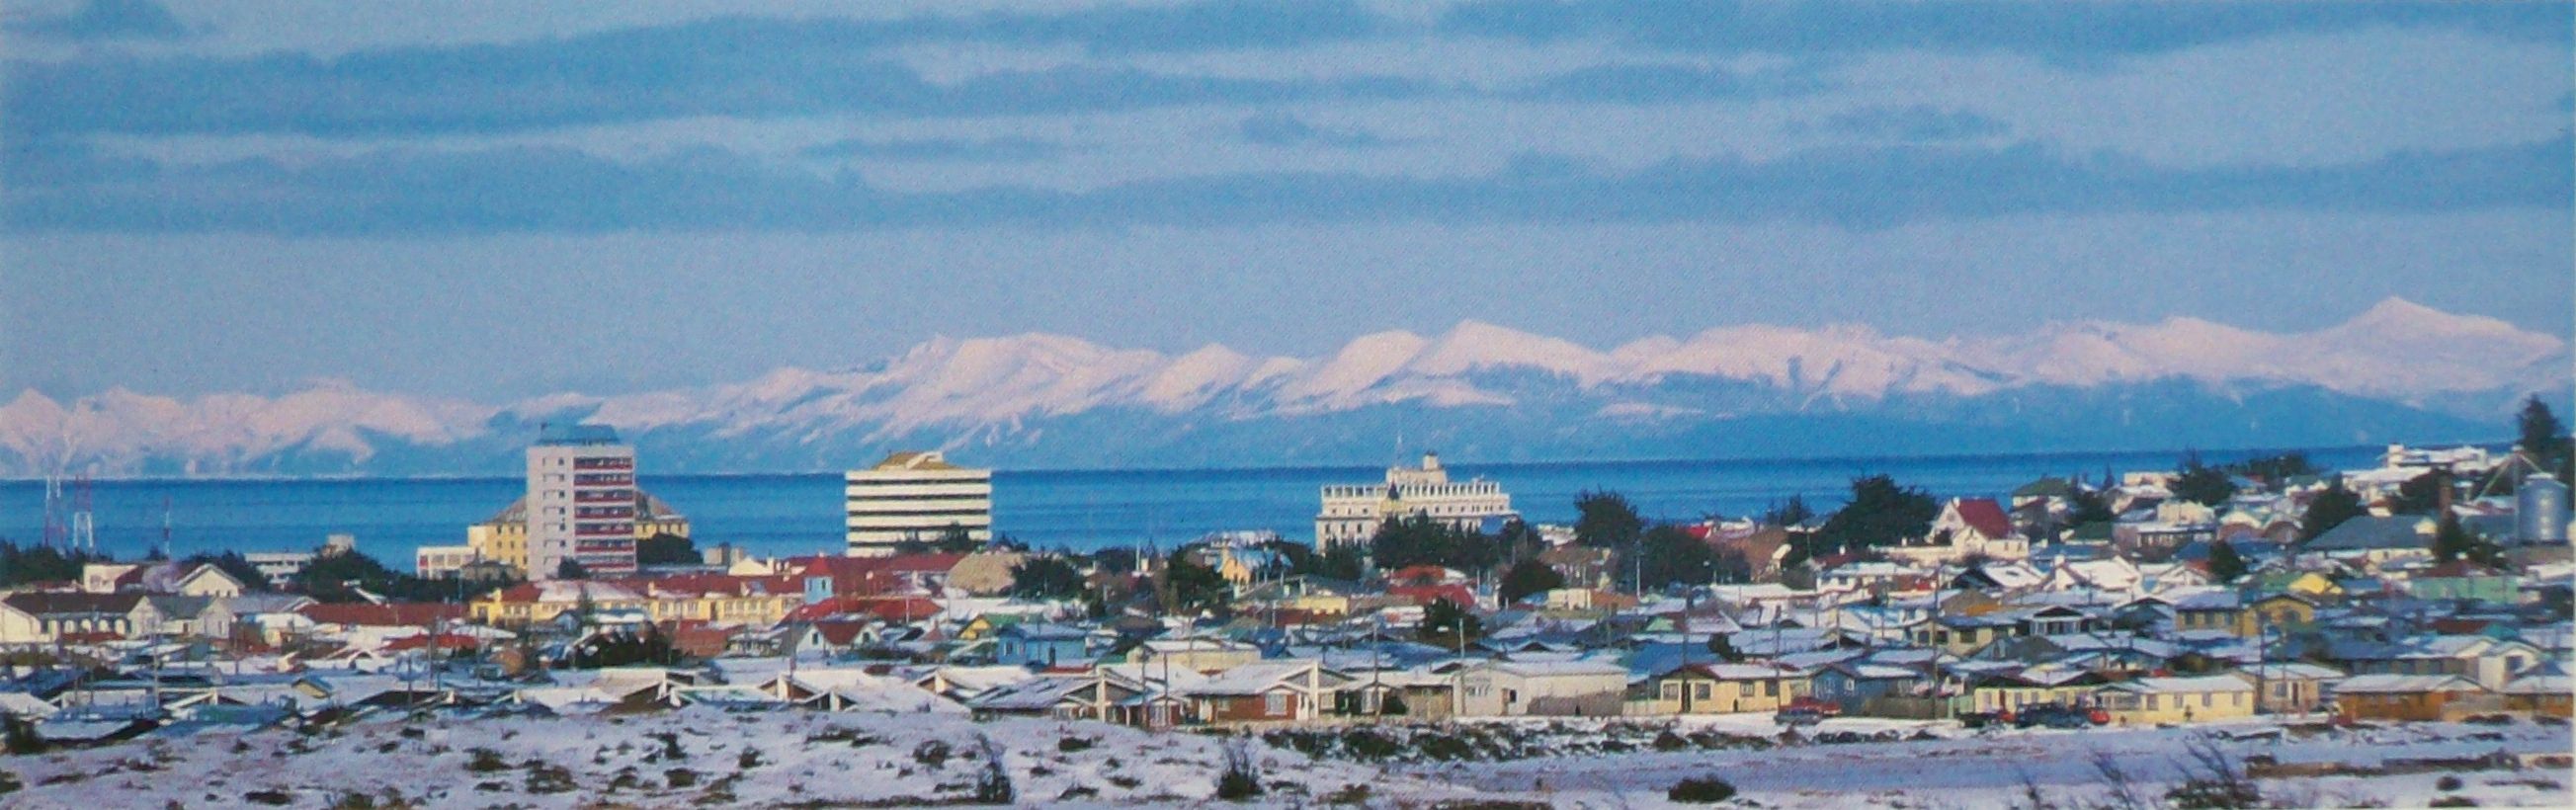 CChC Punta Arenas se pronuncia por conflicto de zonas inundables en la comuna de Punta Arenas